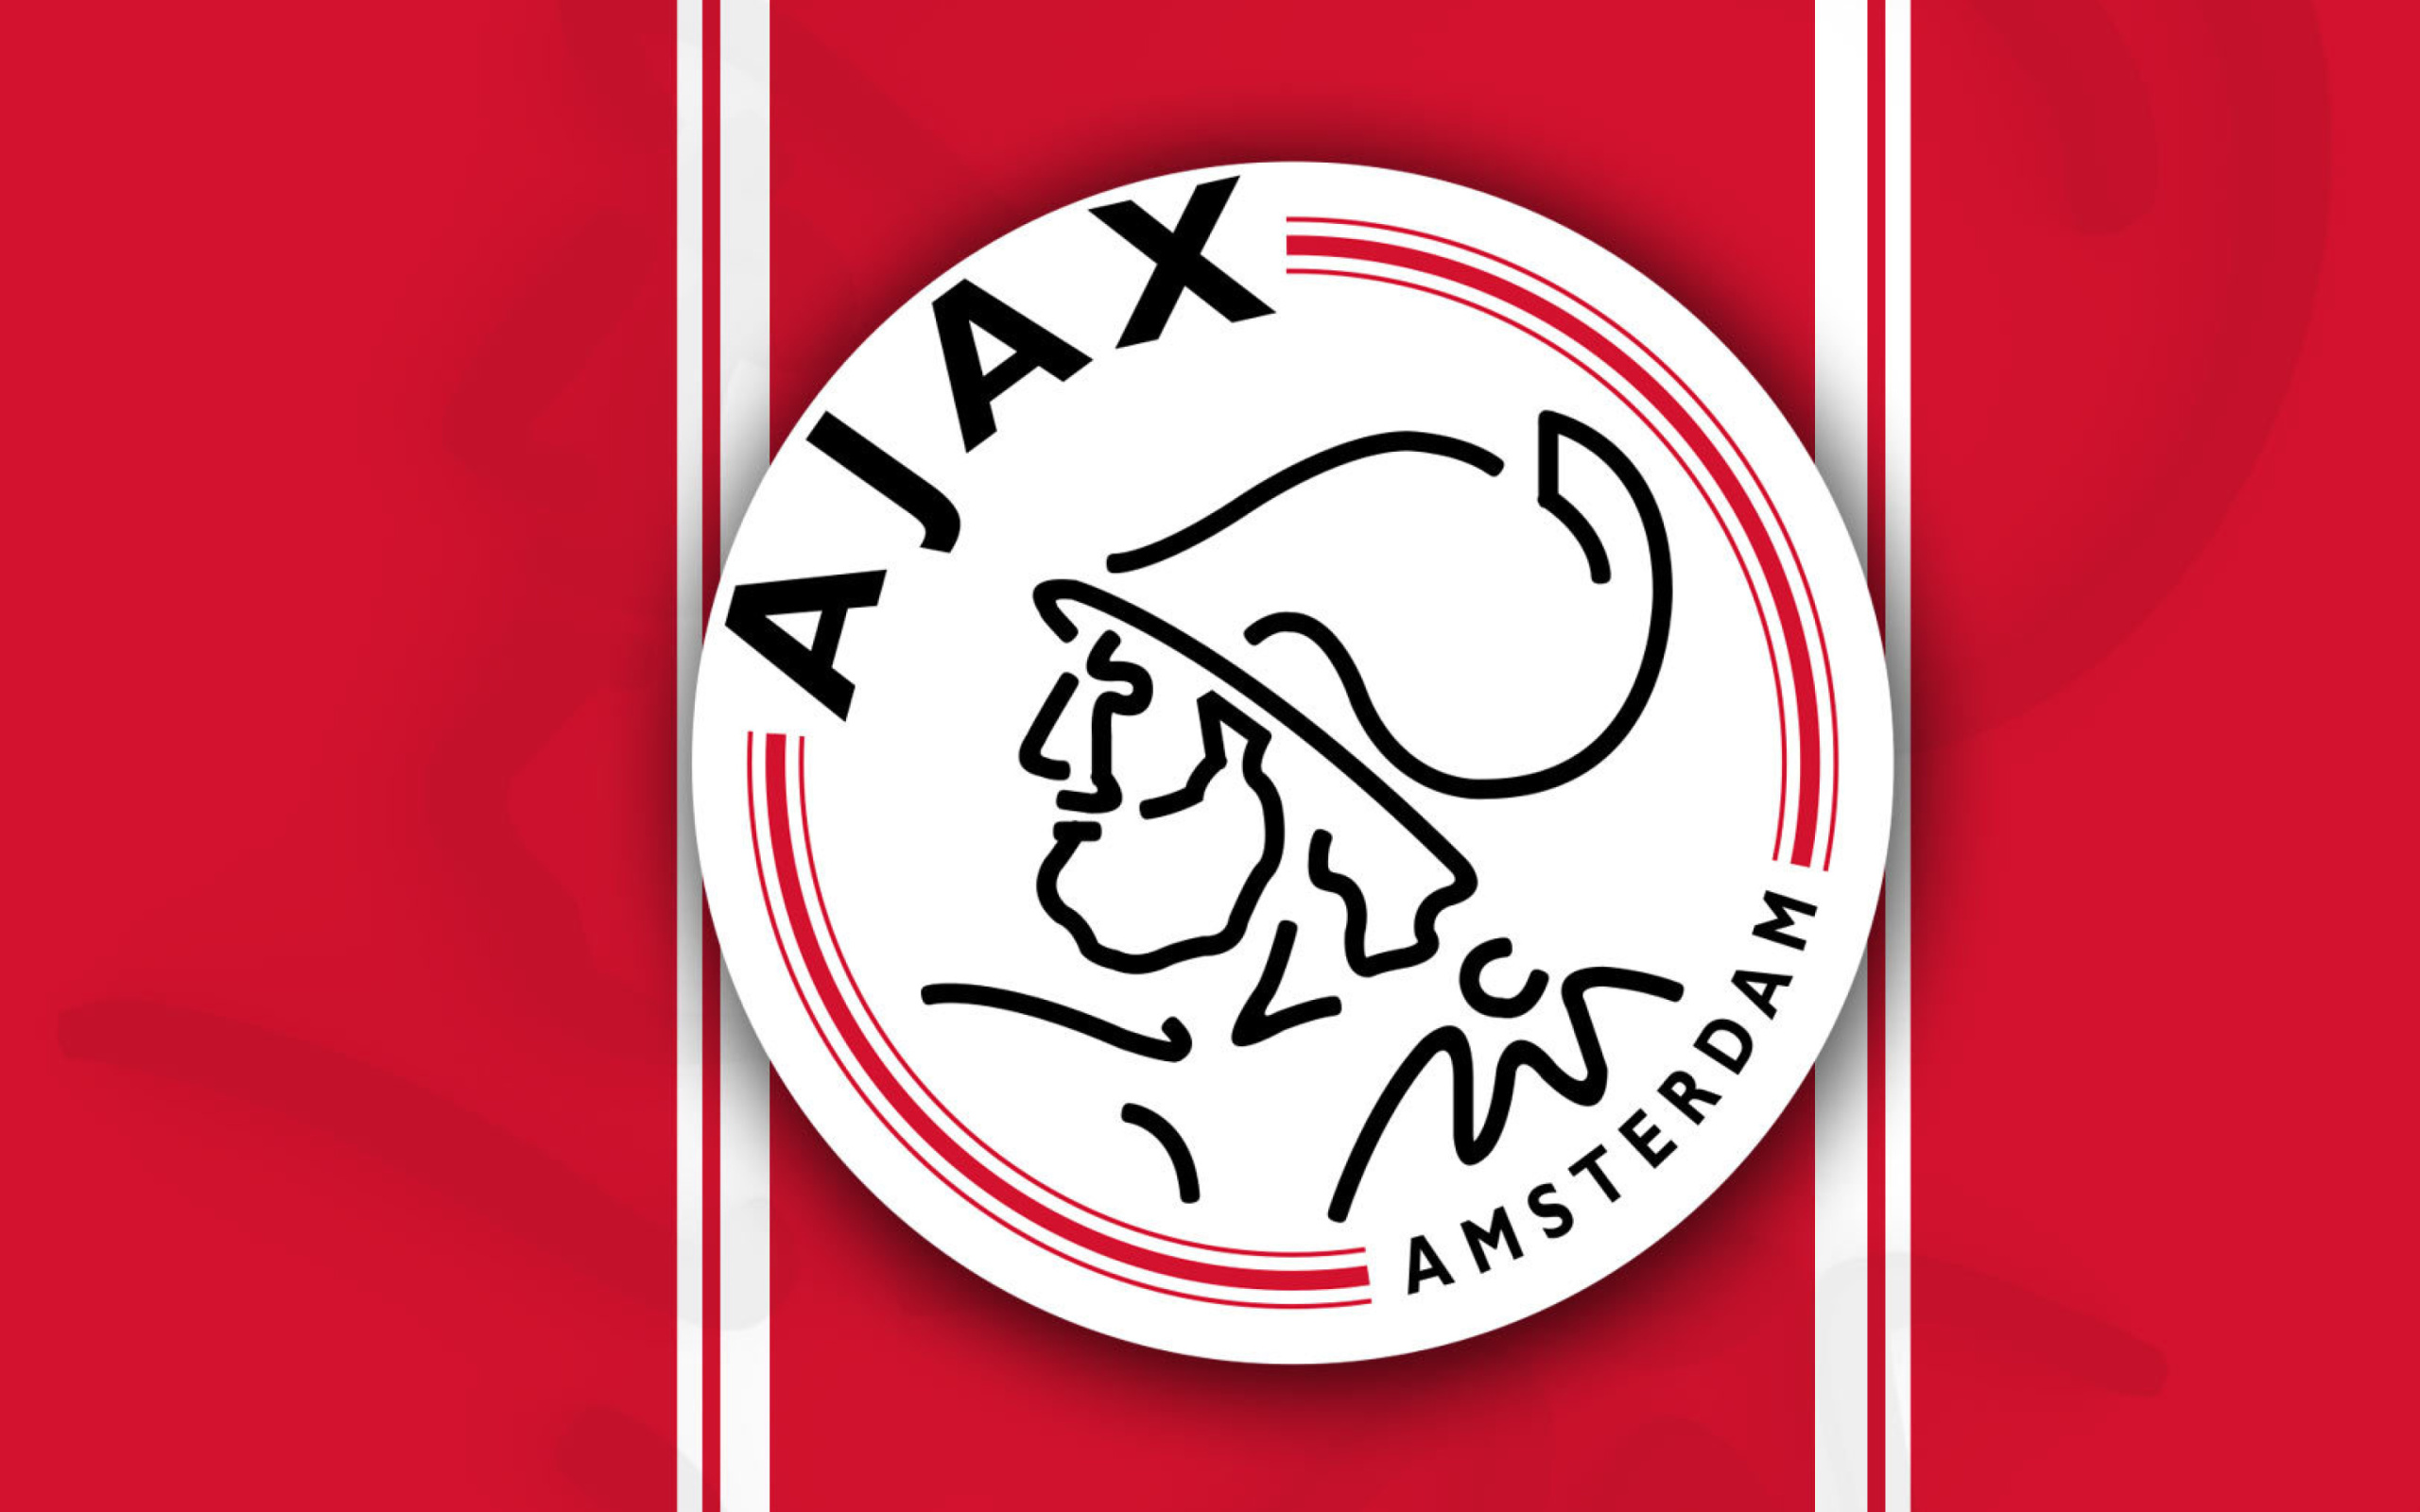 AFC Ajax Football Club wallpaper 2560x1600